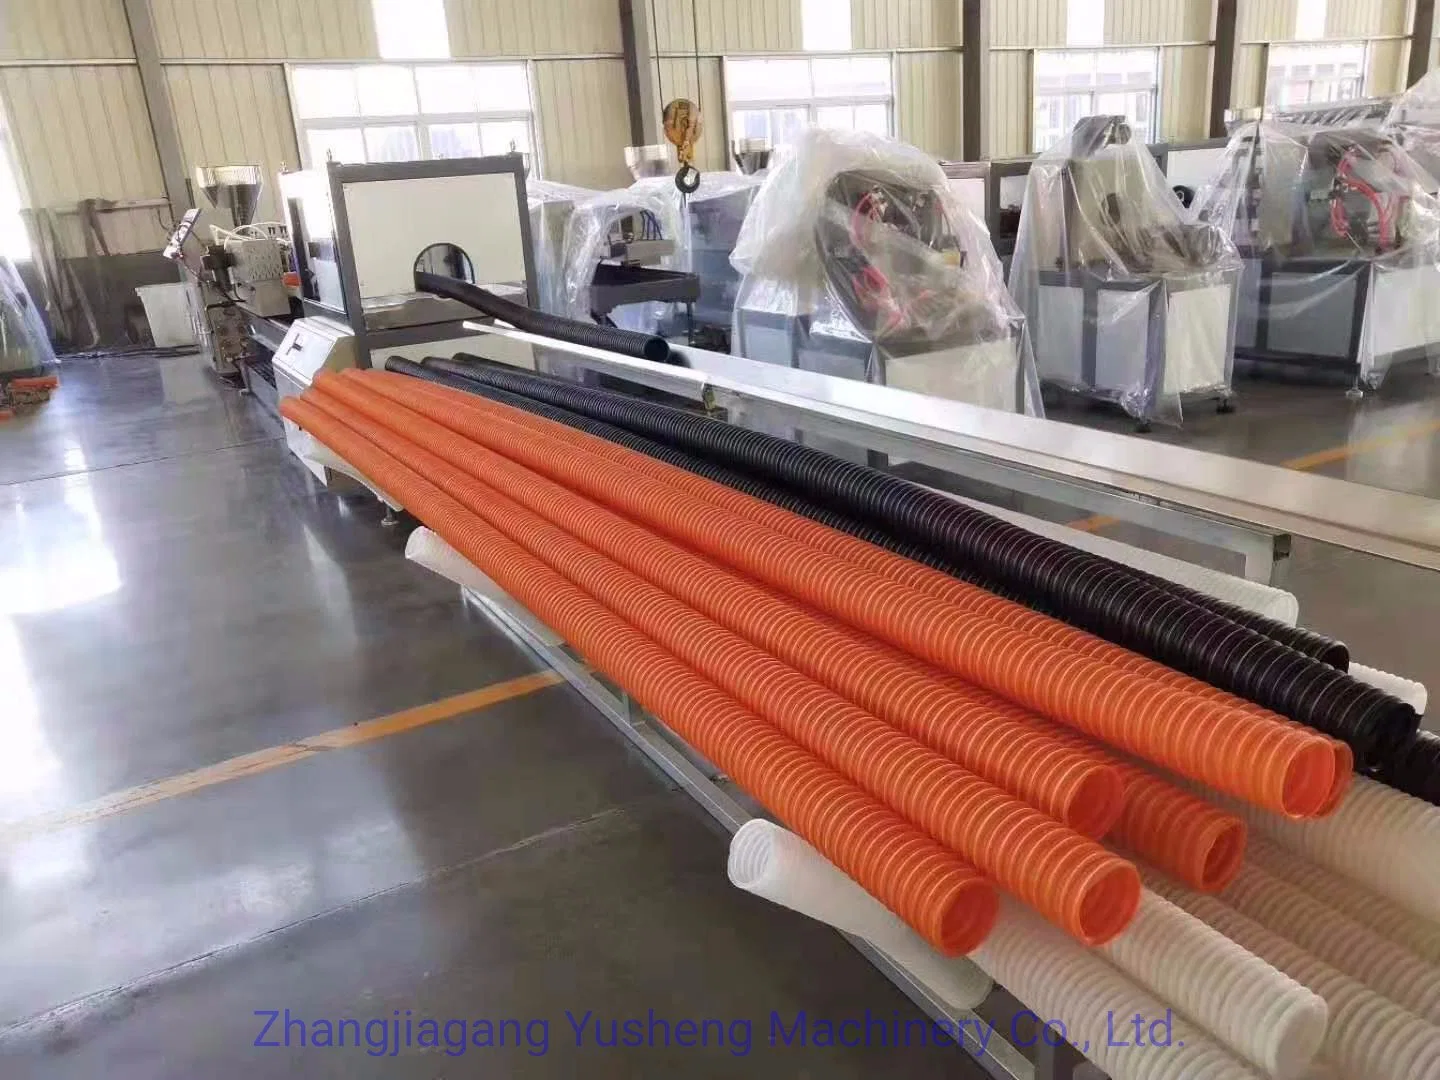 البلاستيك آلات PVC أنبوب إنتاج خط للبيع